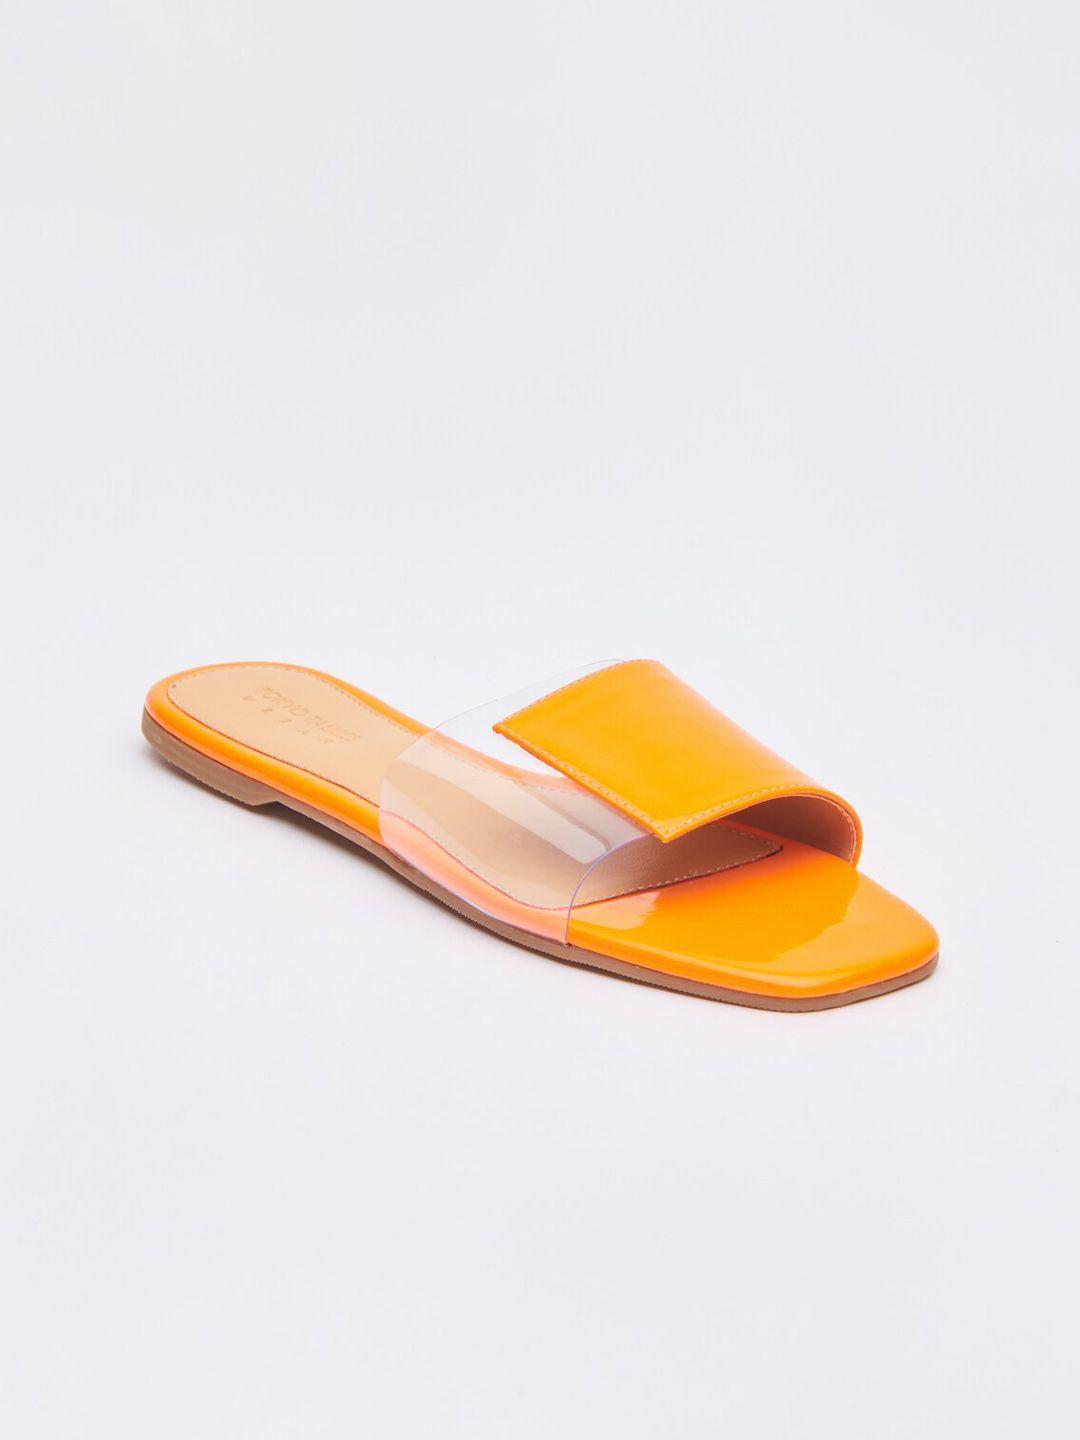 tokyo talkies women orange colourblocked open toe flats